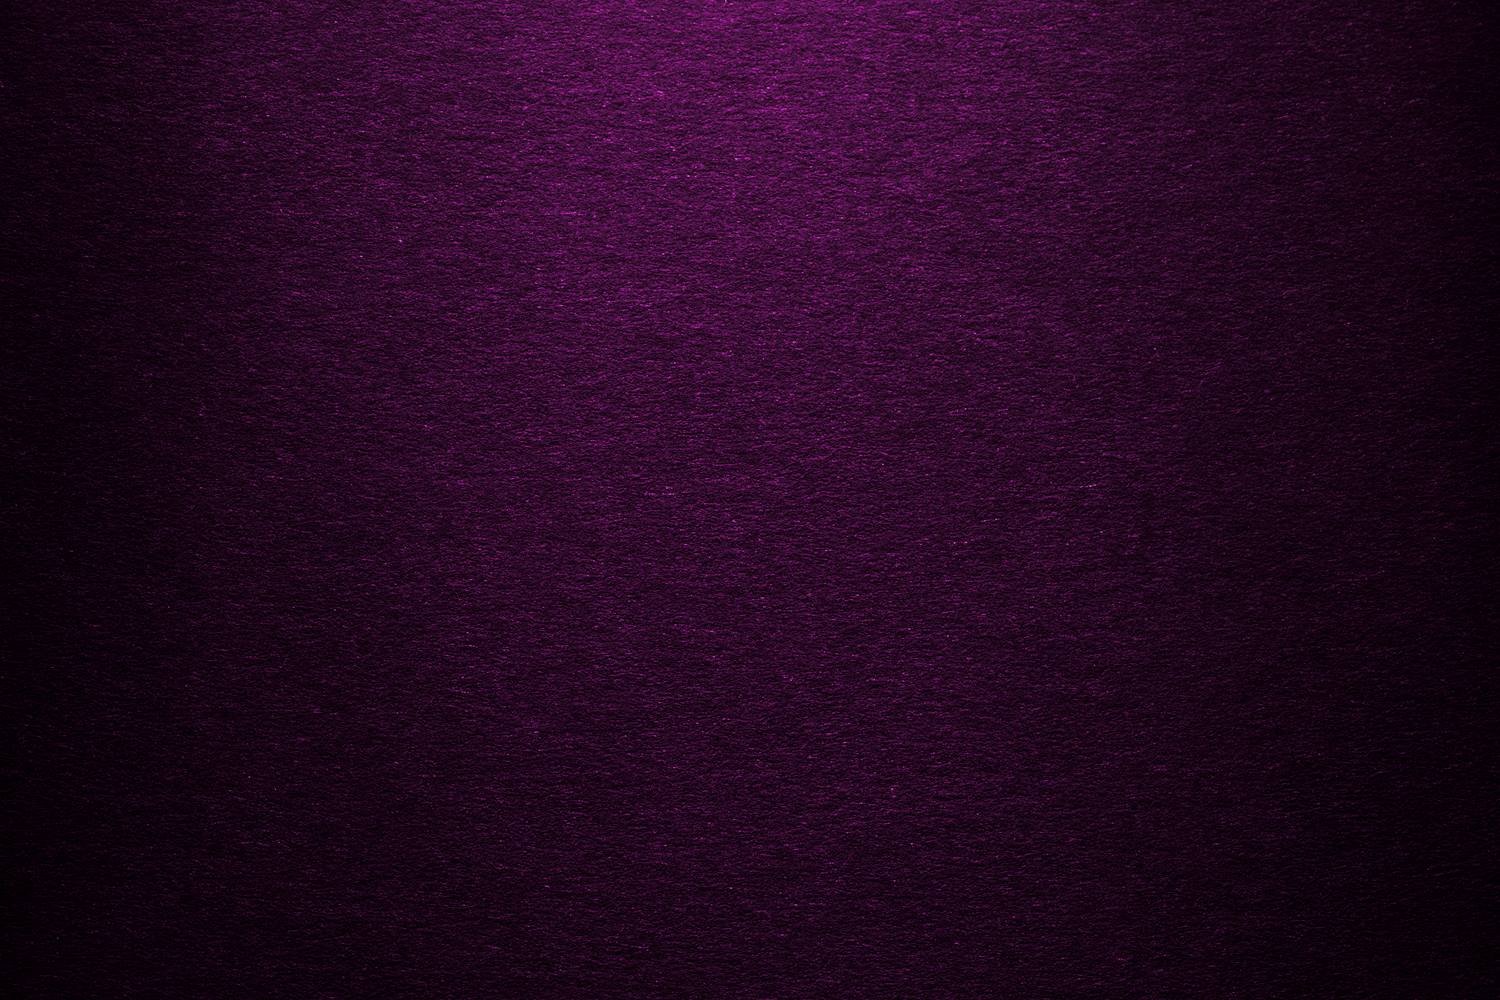 solid dark purple background